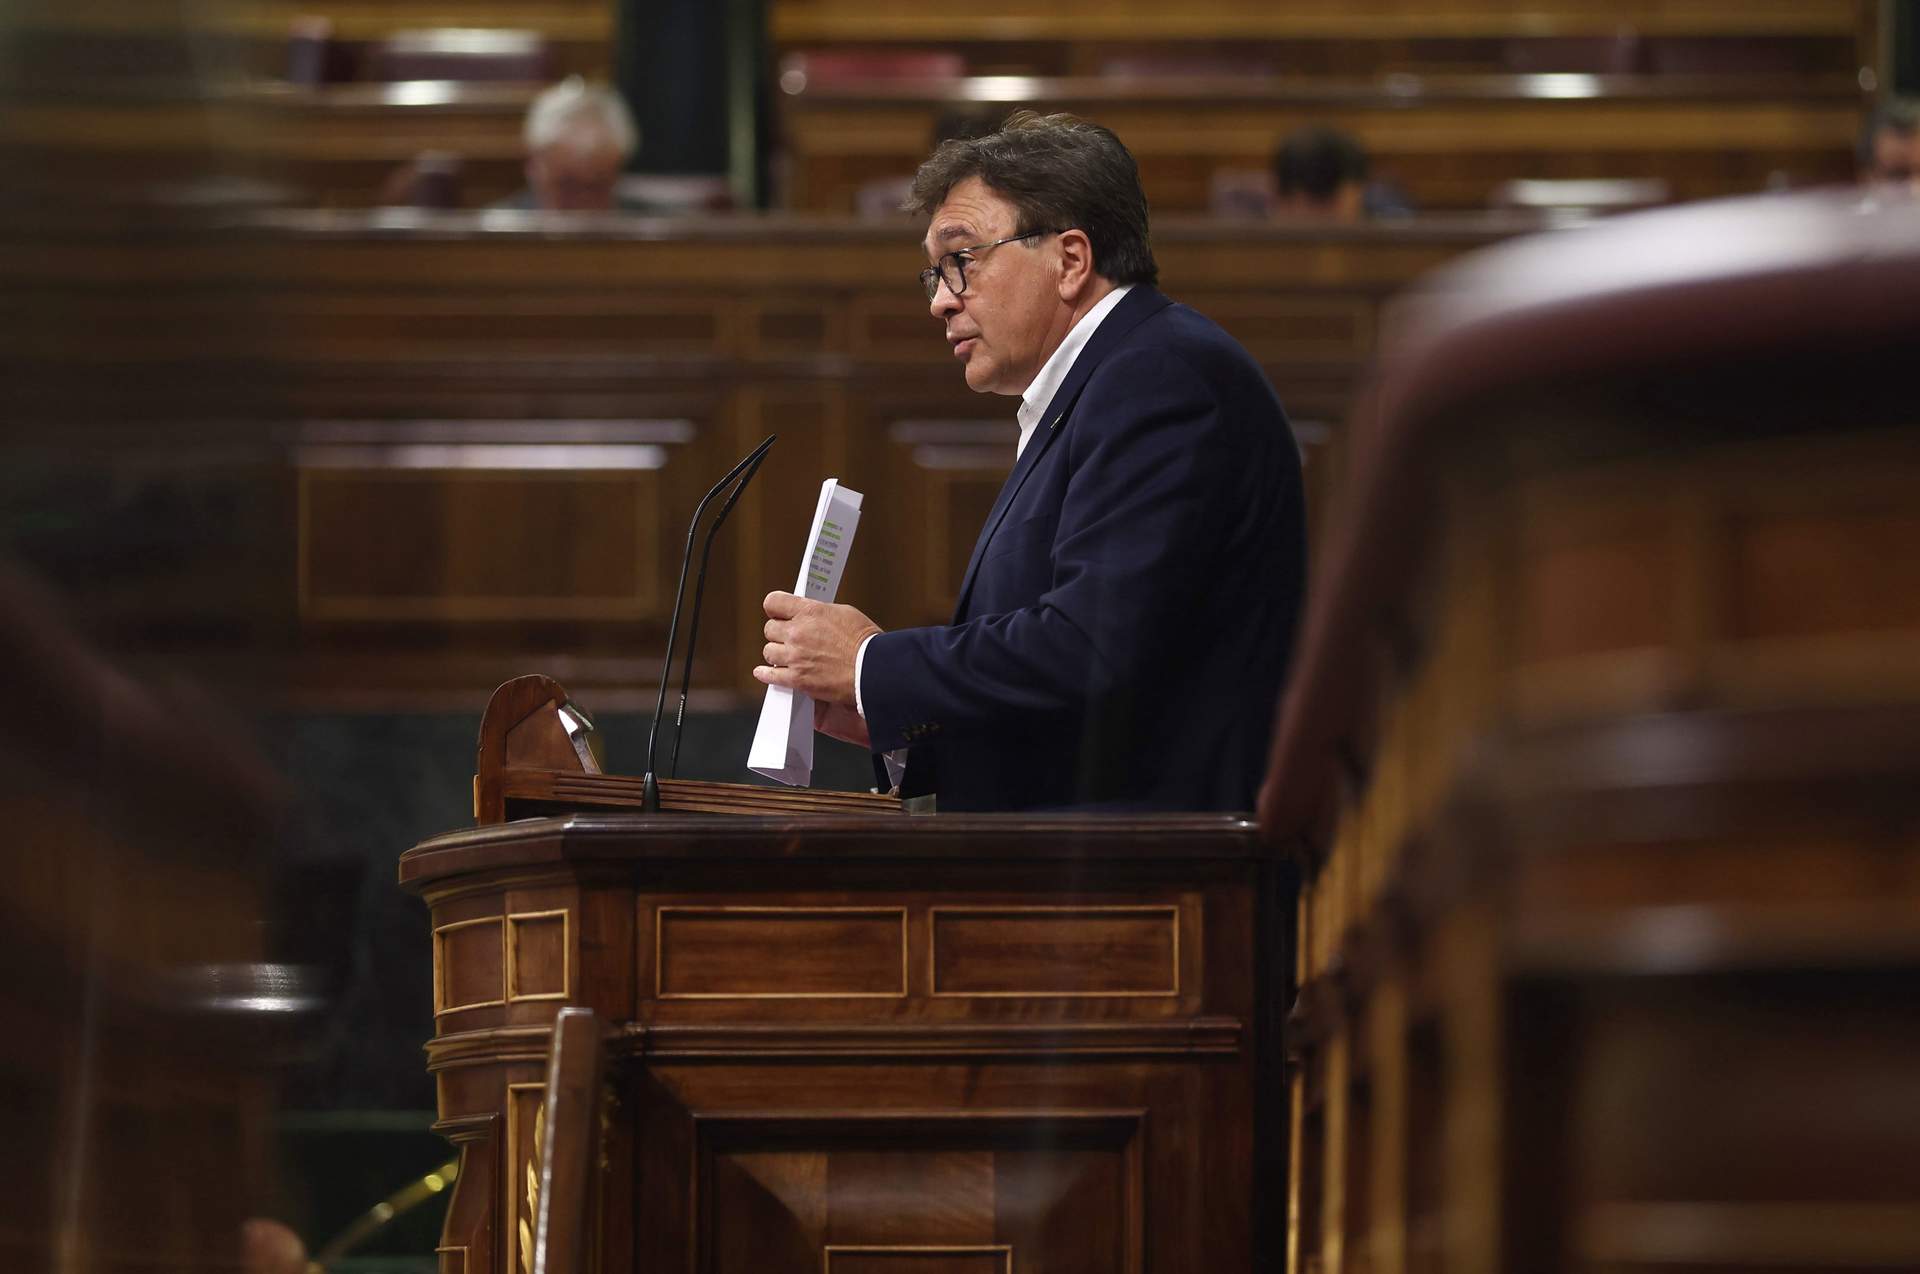 El diputado de Teruel Existe, Tomás Guitarte, interviene durante una sesión plenaria, a 28 de septiembre de 2022, en Madrid.